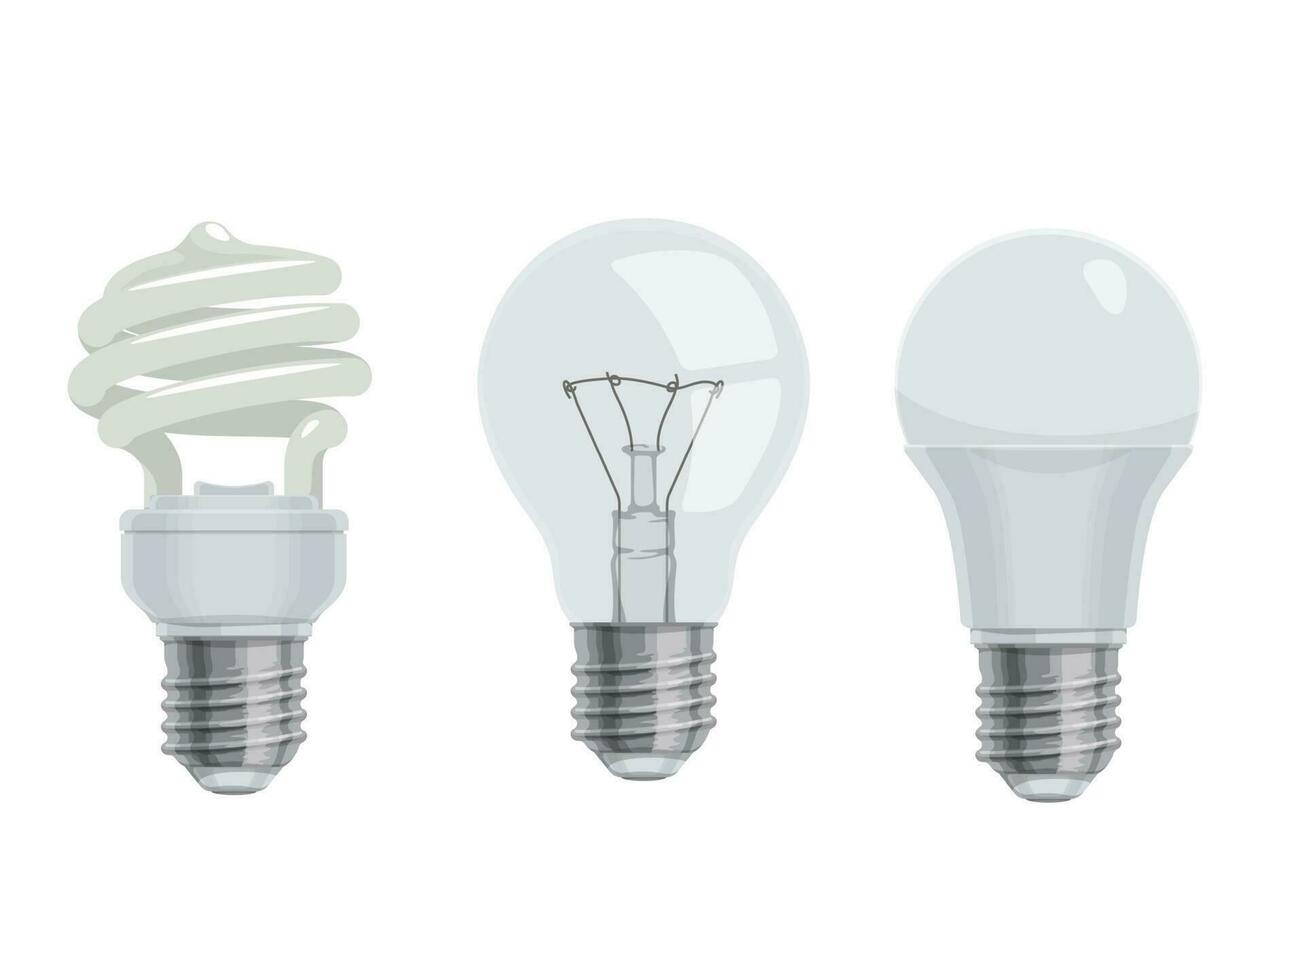 Cartoon lightbulbs or lamps, electric light bulbs vector